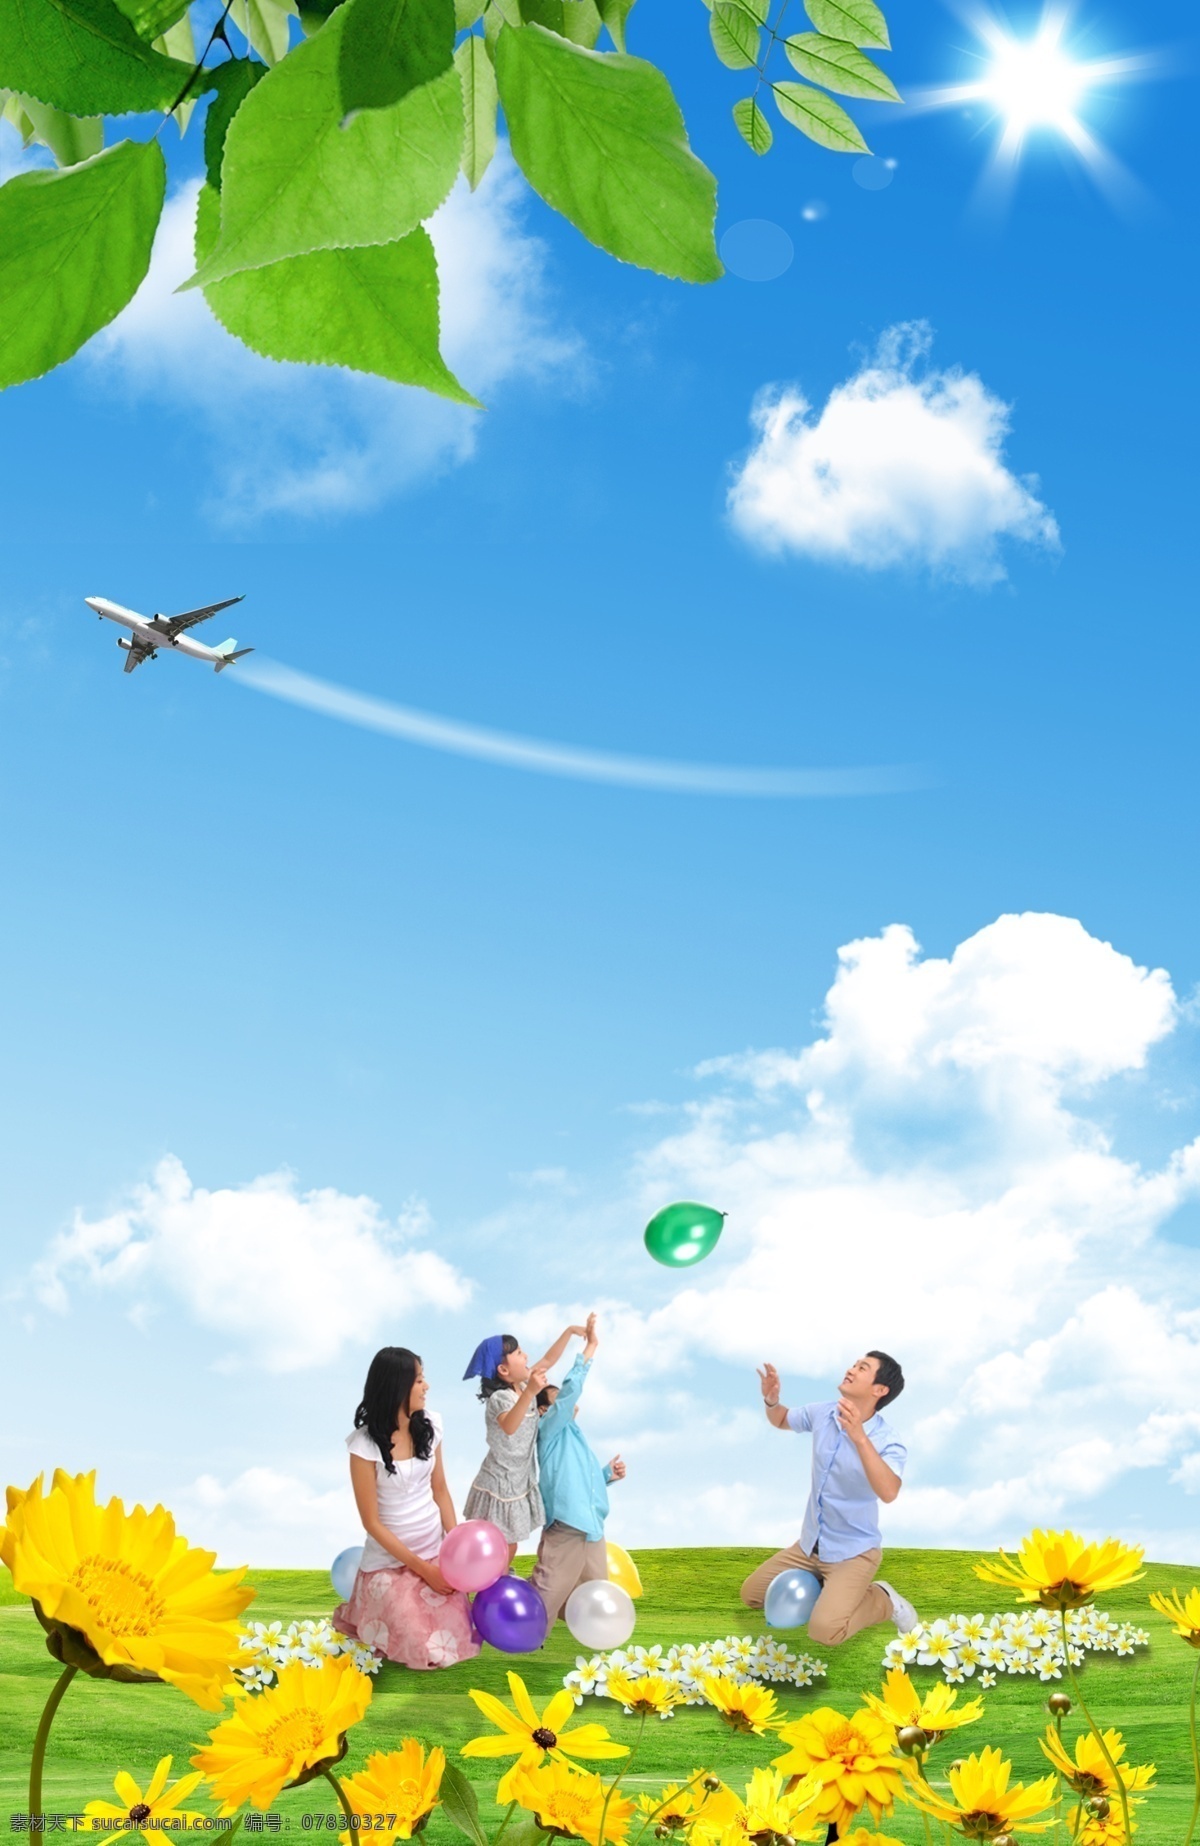 自然风景展板 蓝天 绿叶 幸福一家人 黄花 飞机 白云 绿草地 户外广告背景 展板模板 广告设计模板 源文件